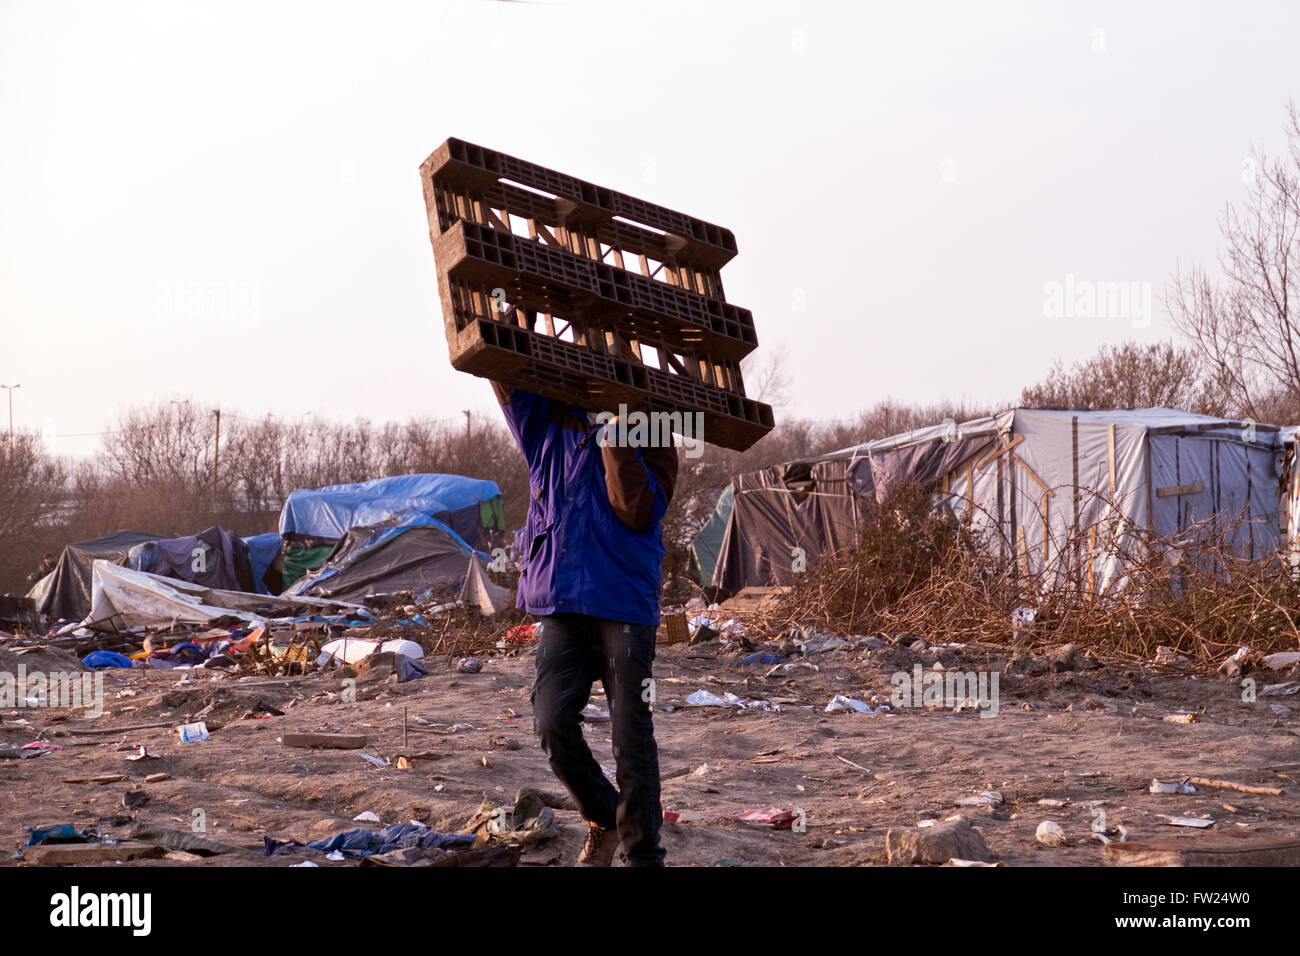 La jungle camp de réfugiés migrants à Calais et la France où des milliers de réfugiés ont vécu dans la boue et l'état sordide espérant Banque D'Images